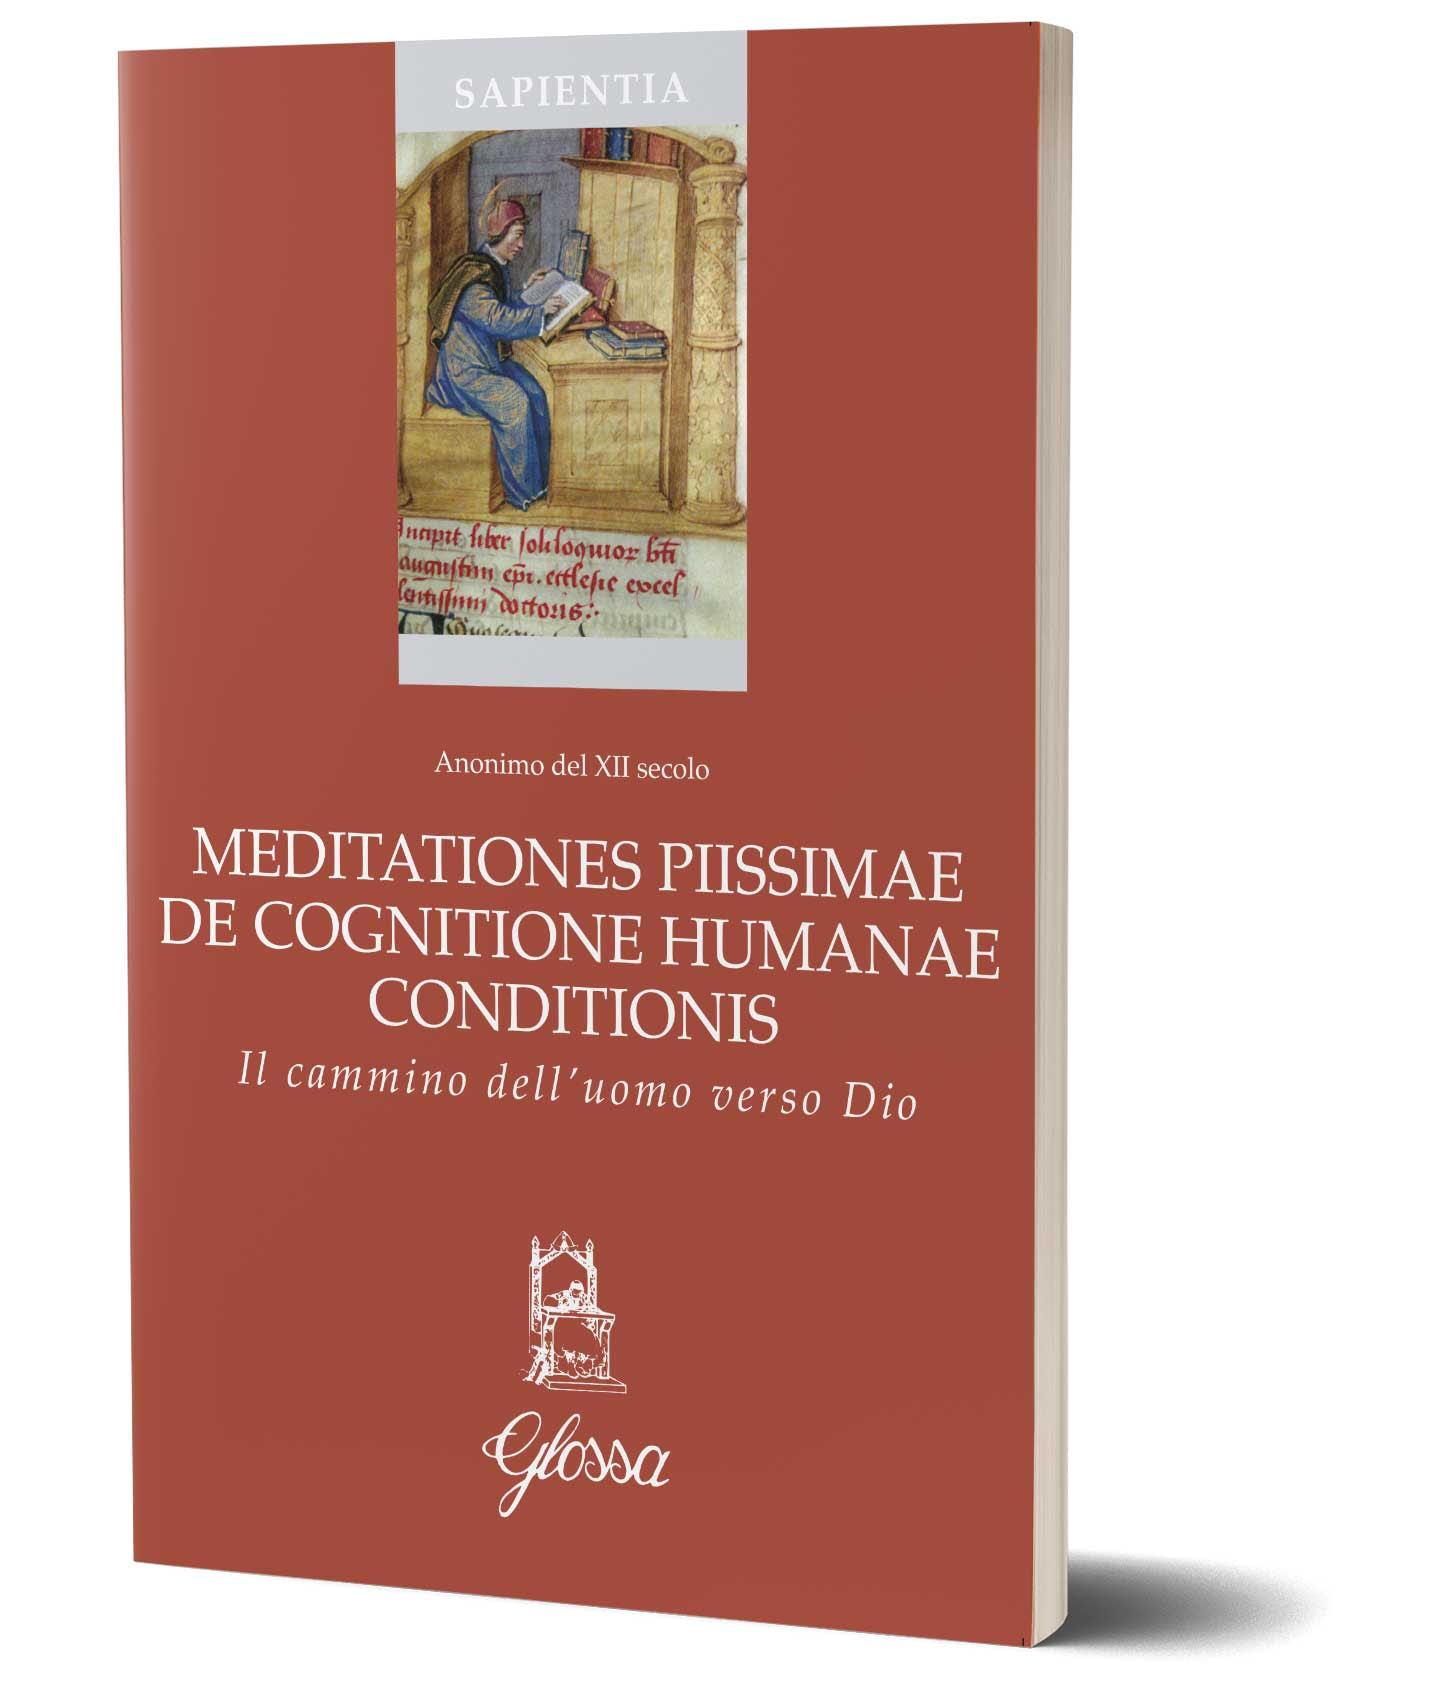 copertina Sapientia 91 meditationes